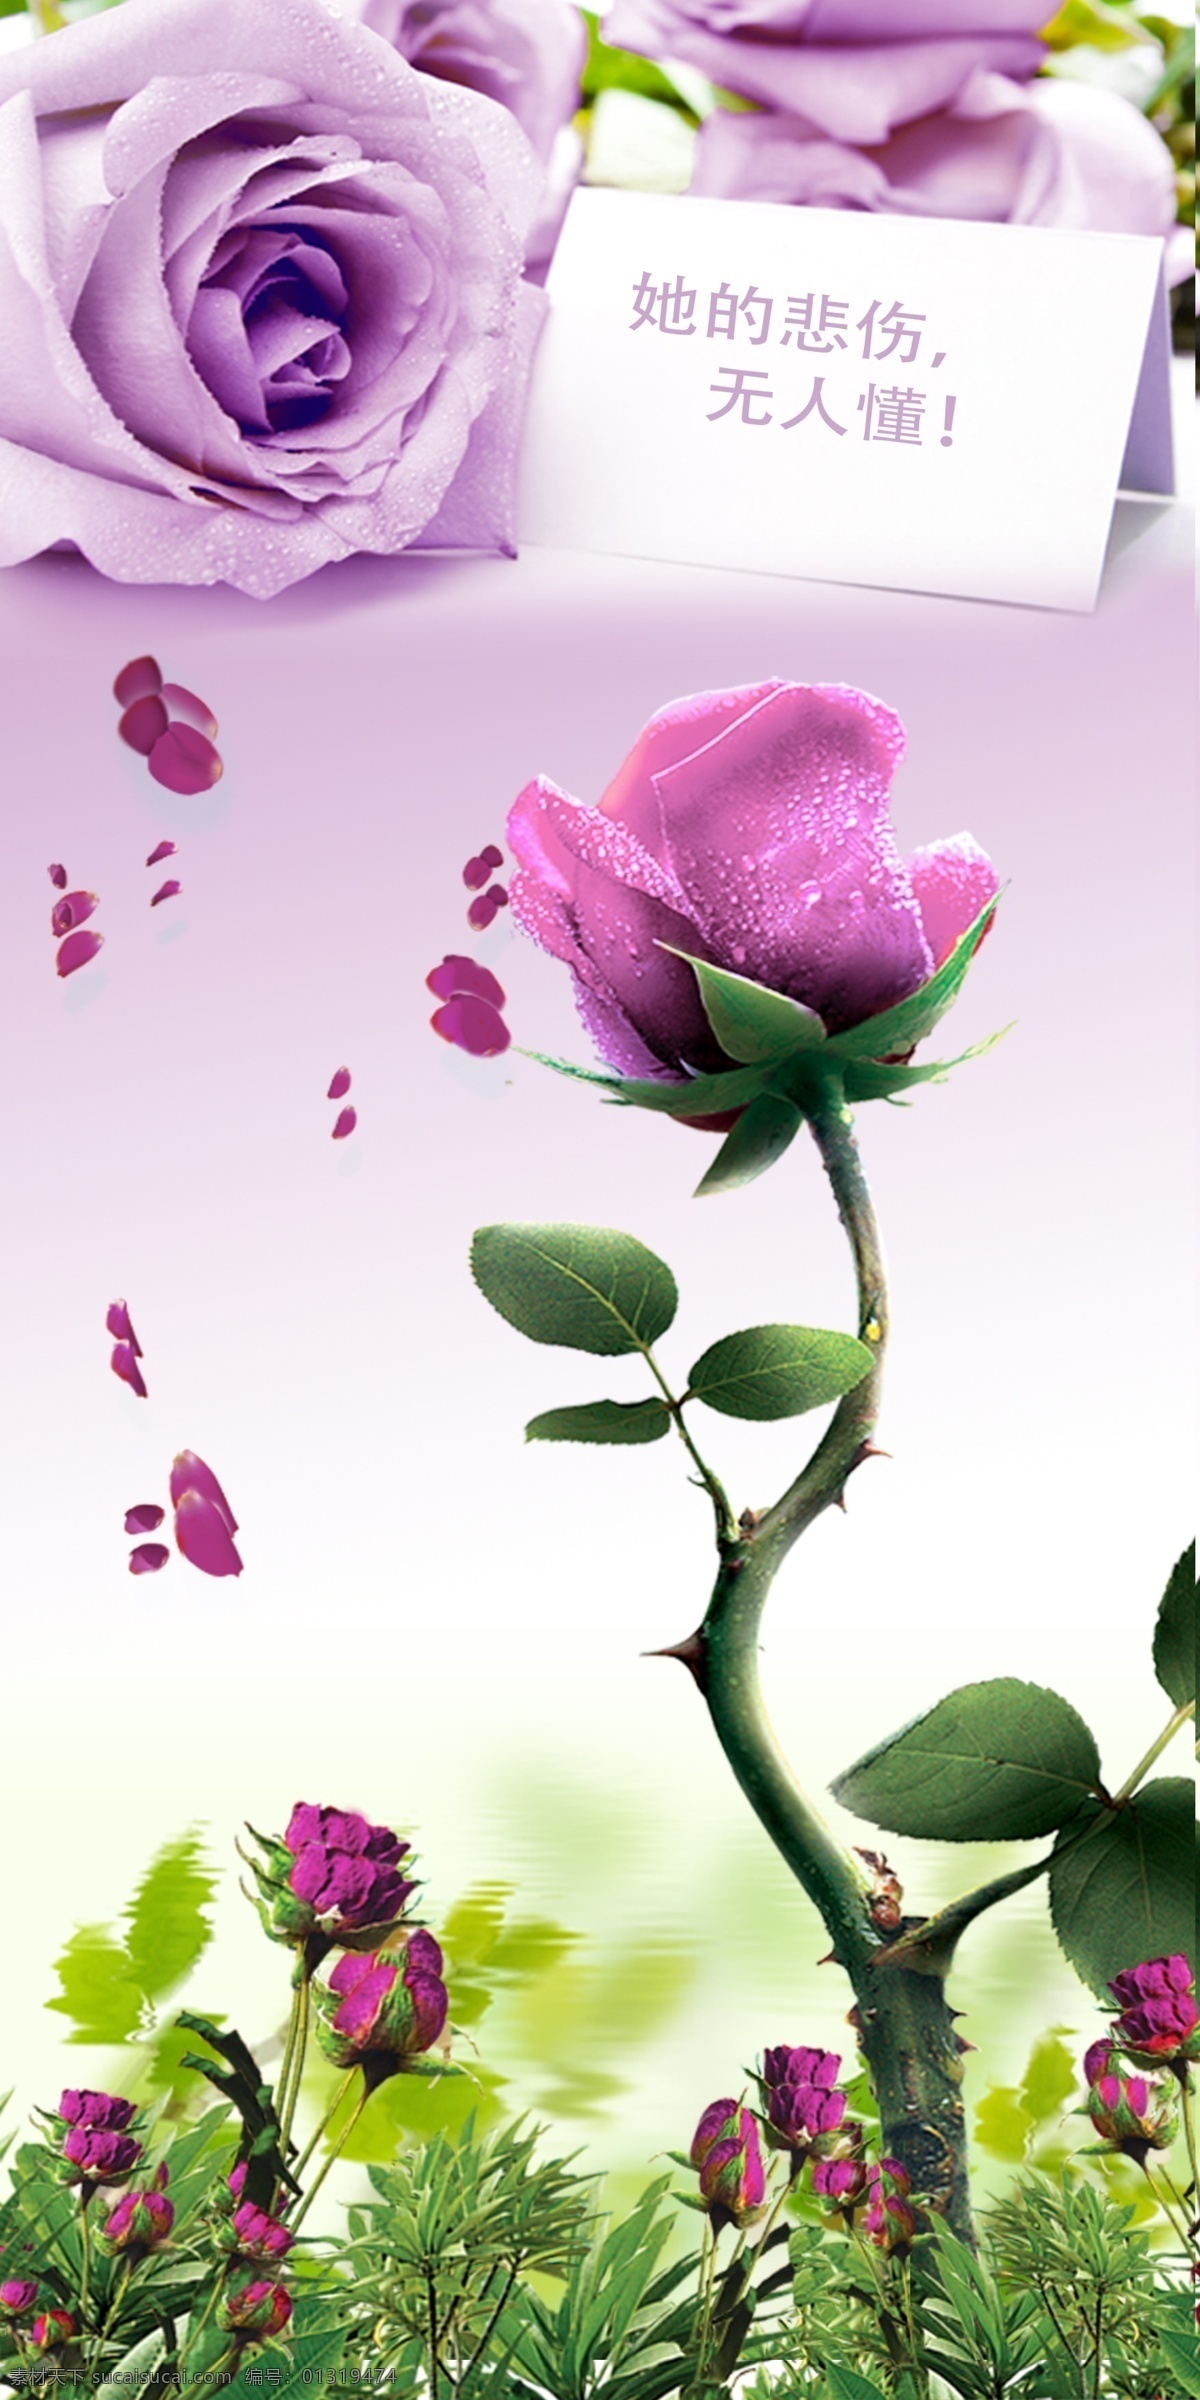 紫色玫瑰 背景墙 花卉 玫瑰 紫色 花 底纹边框 移门图案 玫瑰背景 紫玫瑰背景 紫色背景 紫玫瑰 玫瑰瑰花 紫色玫瑰花 背景 花草 生物世界